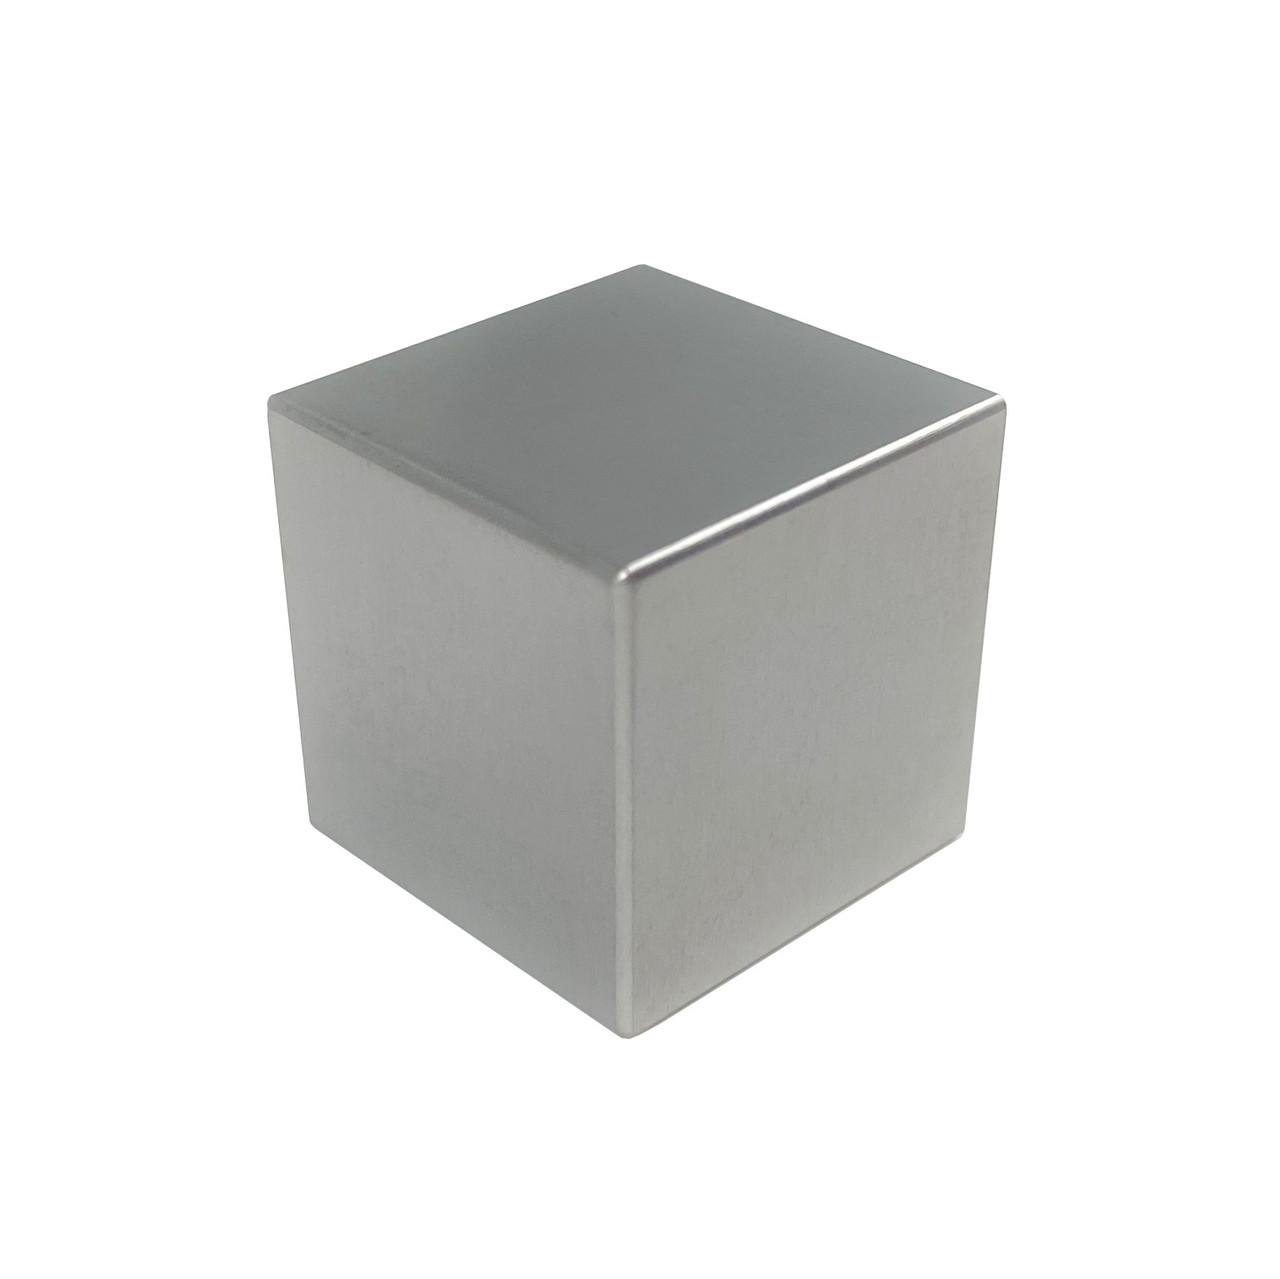 3 x 3 x 5 inch Cube